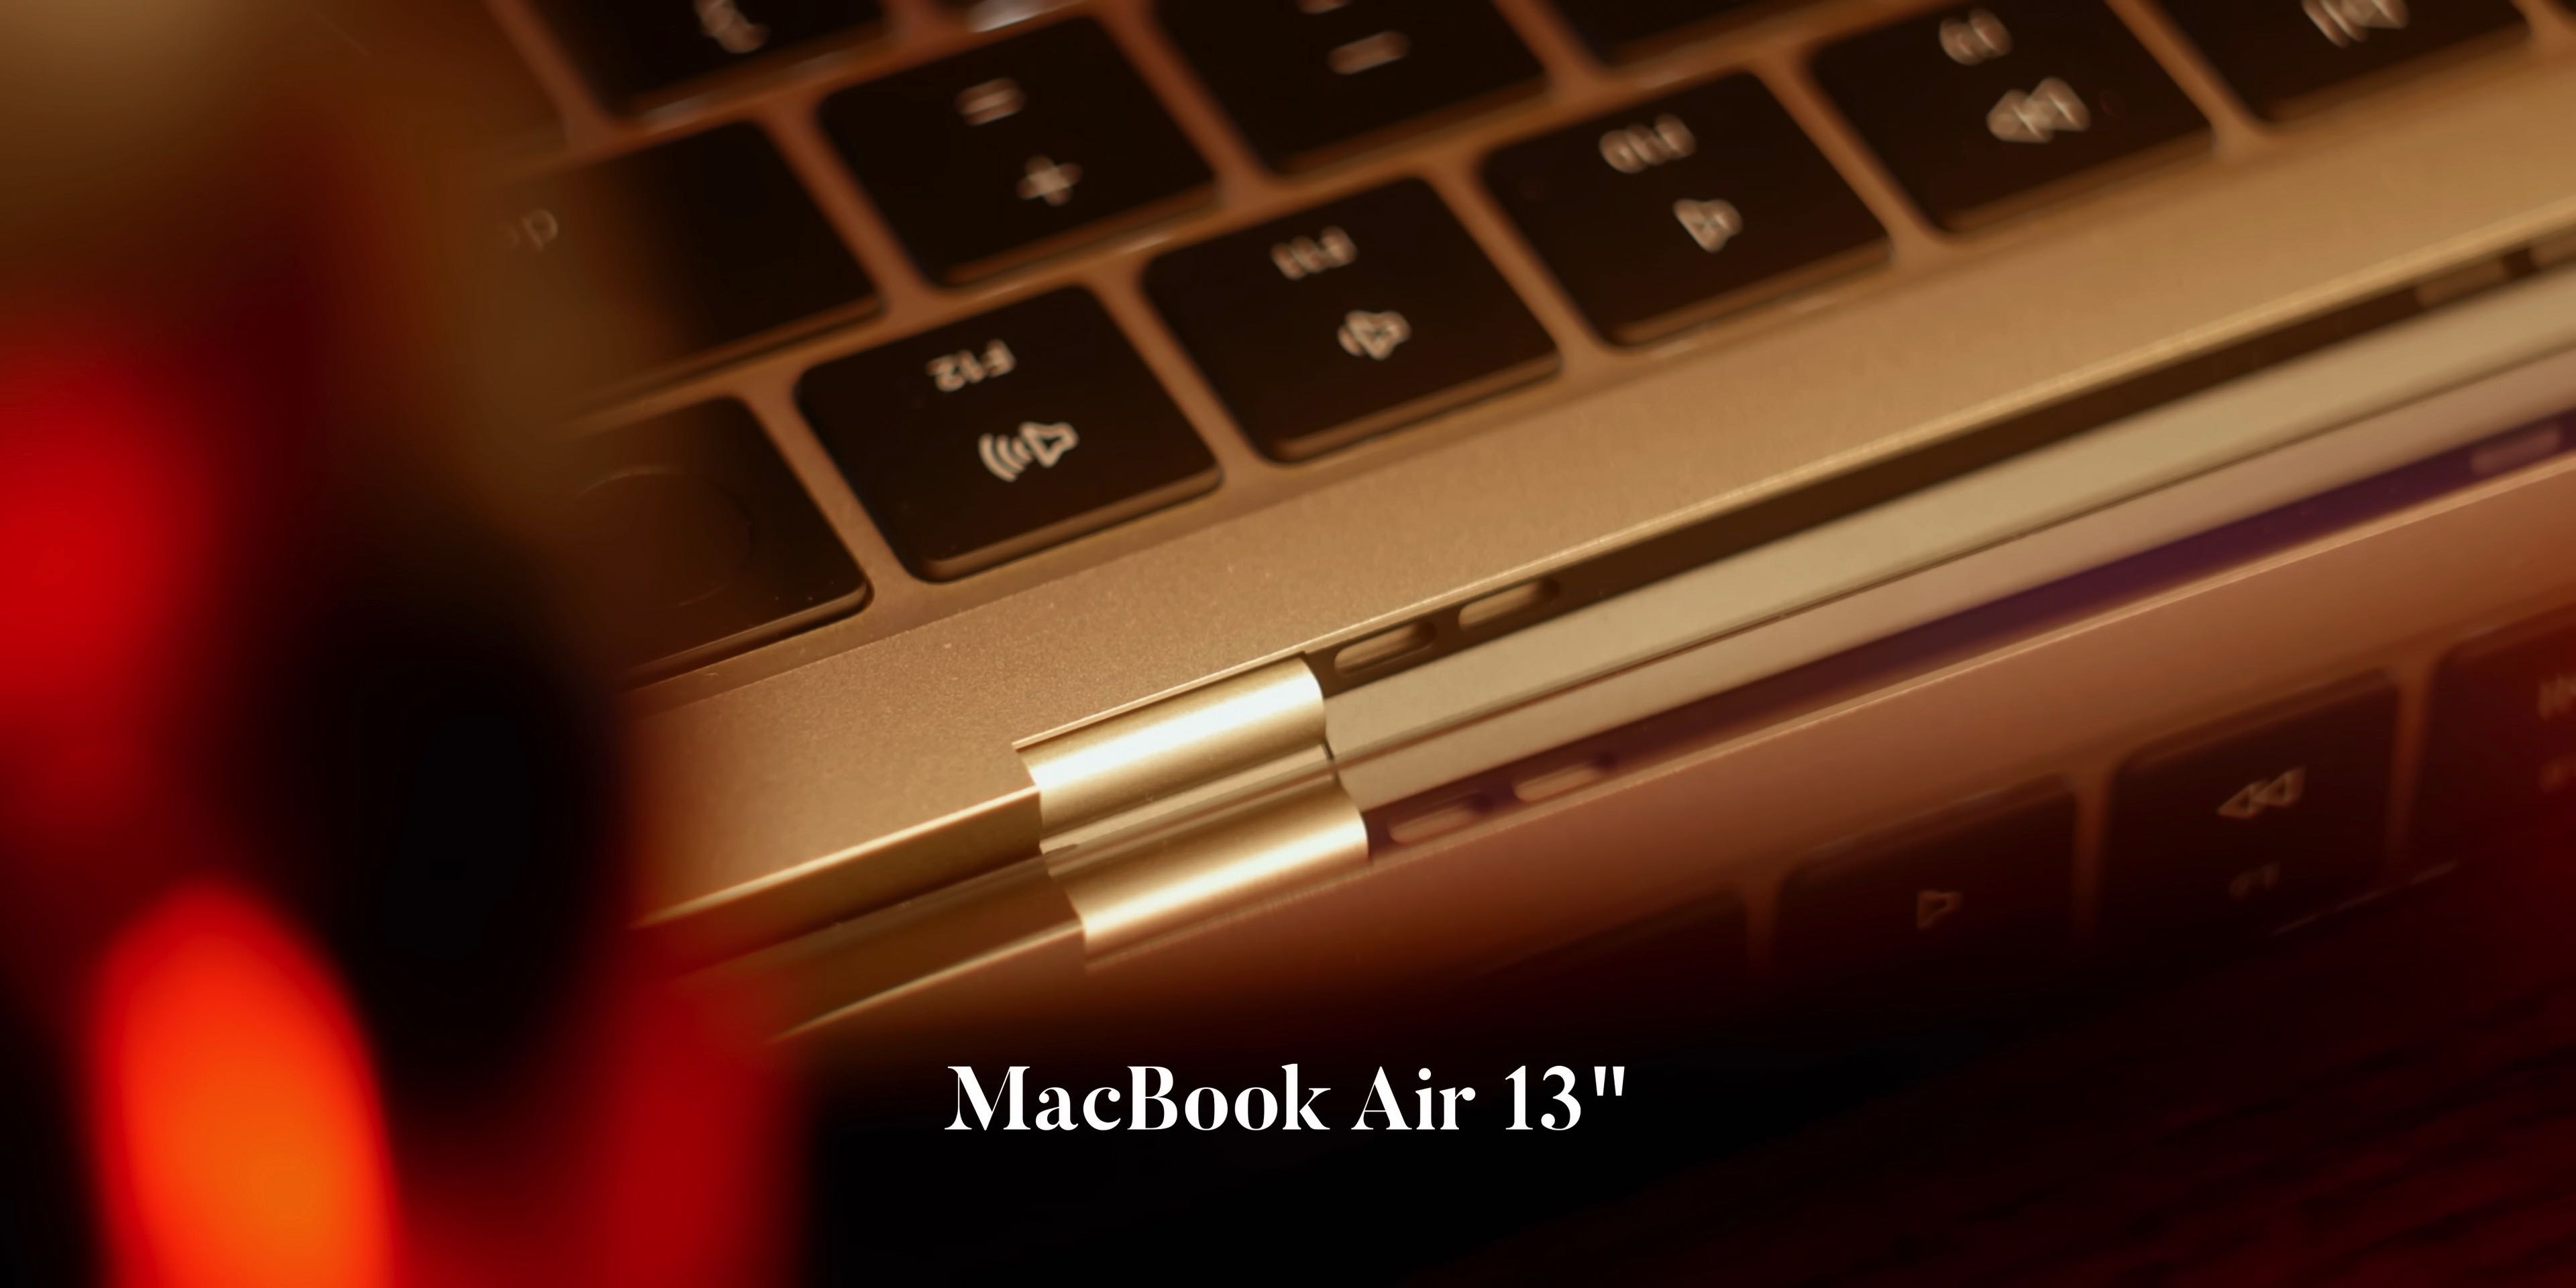 Apple MacBook Air 15 (base) Review